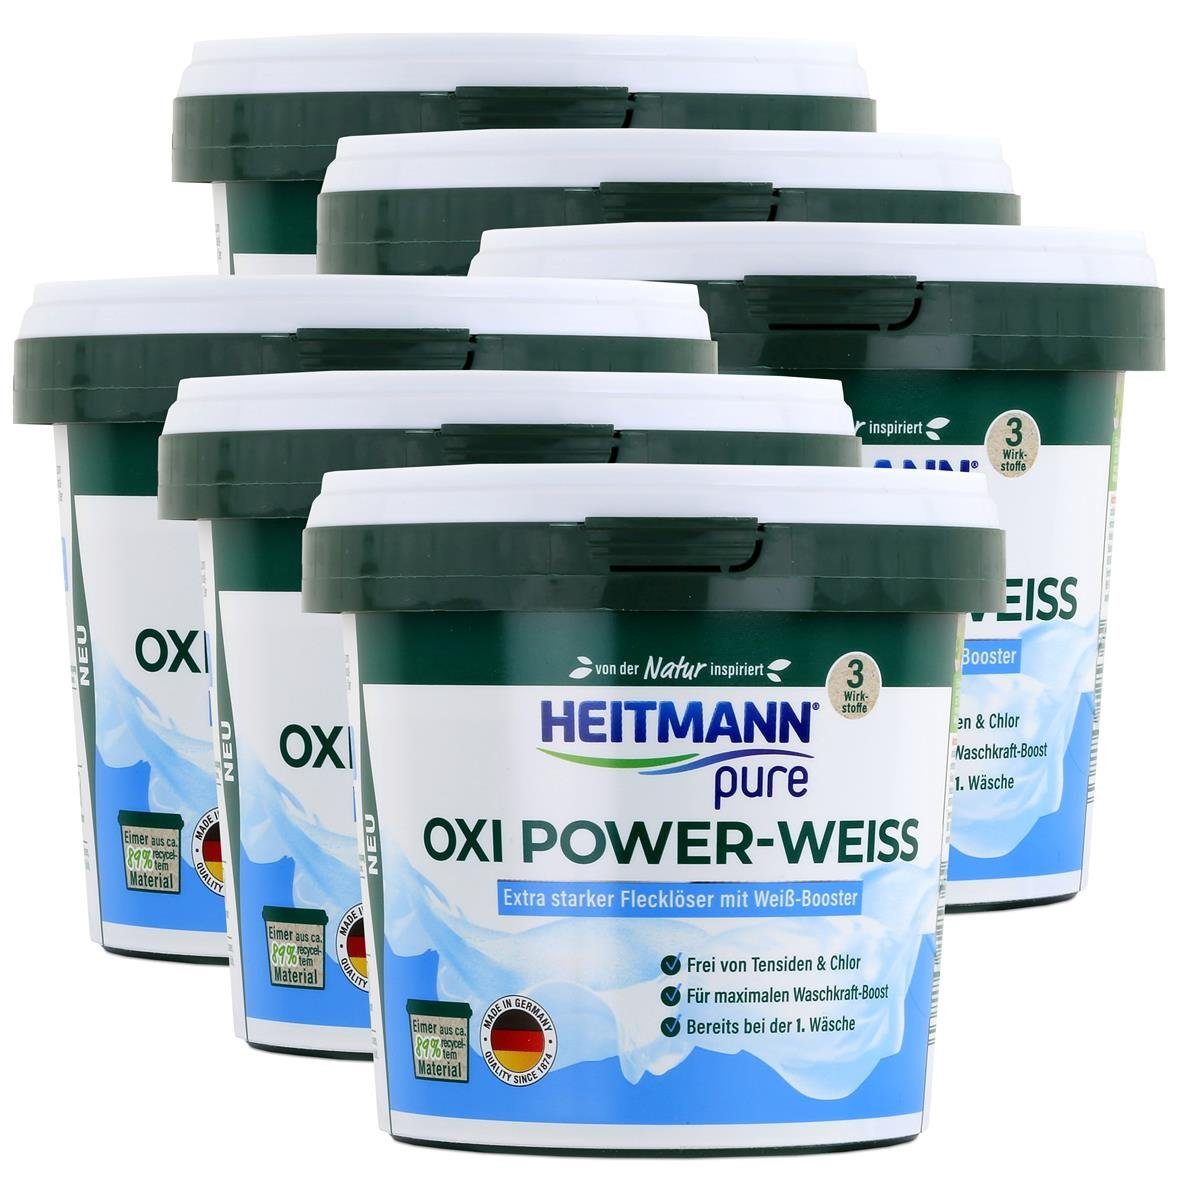 pure Weiß-Booster 500g Oxi (6er HEITMANN - mit Heitmann Power-Weiss Vollwaschmittel Flecklöser